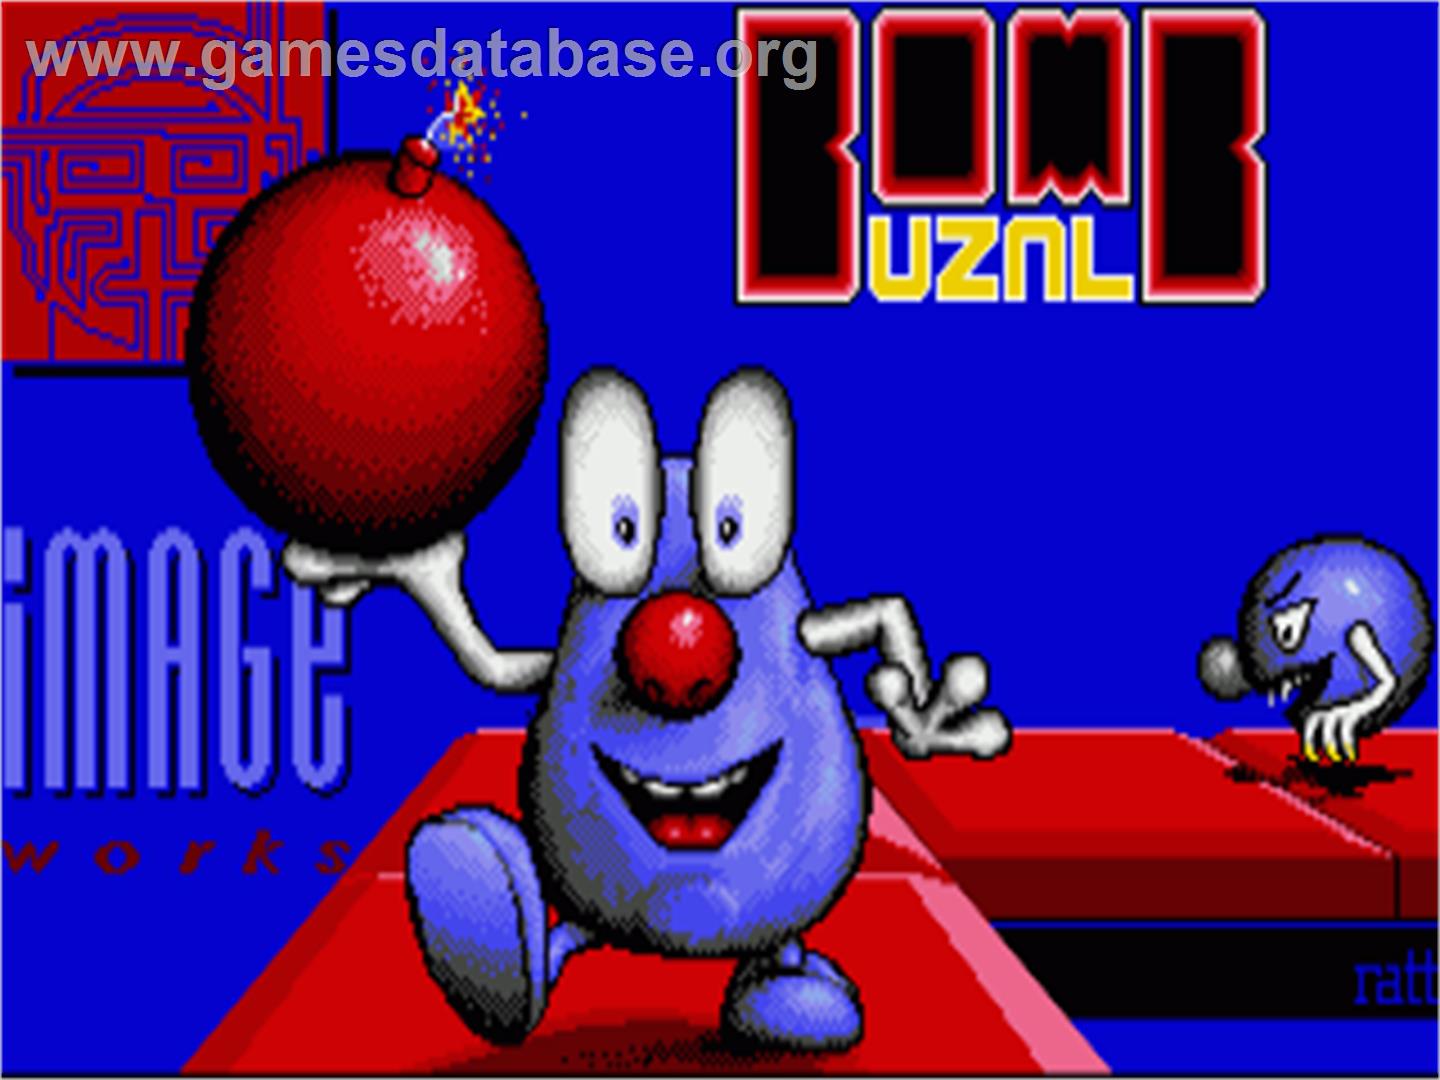 Bombuzal - Commodore Amiga - Artwork - Title Screen